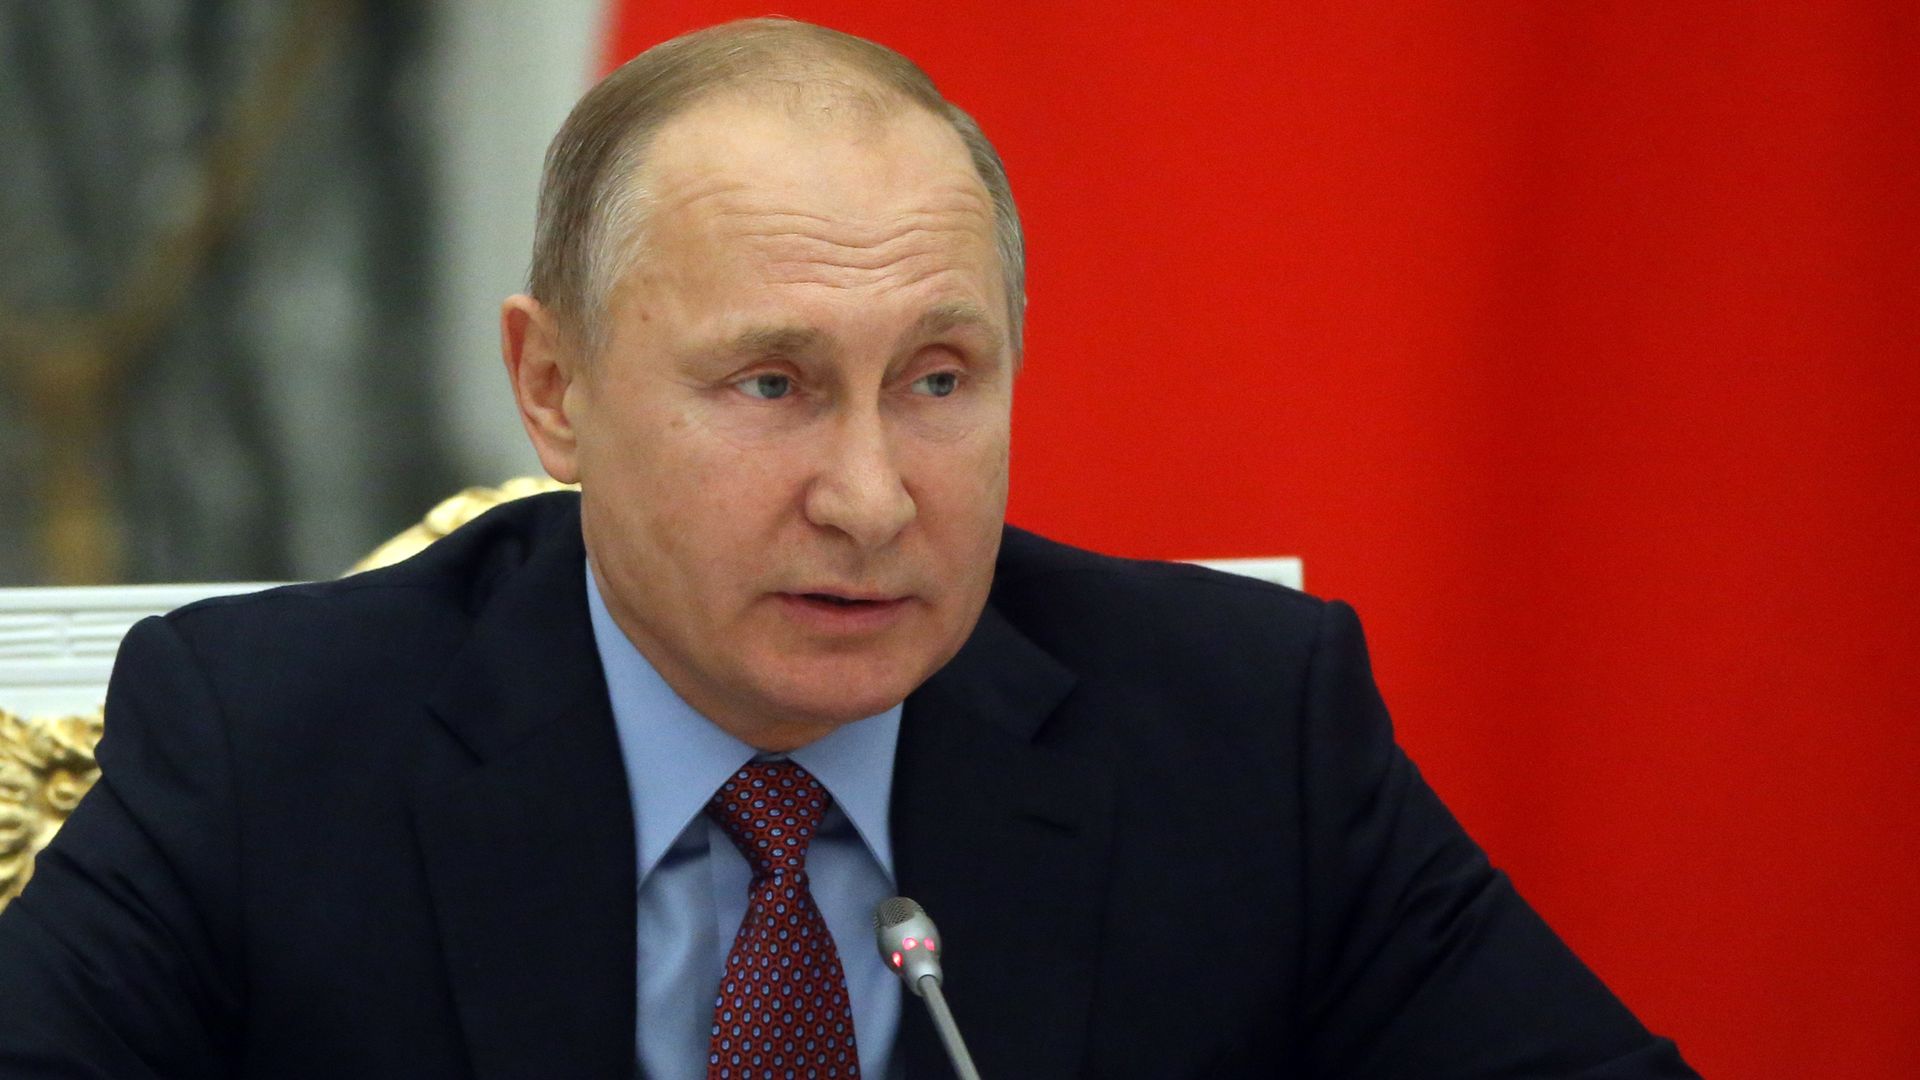 Vladimir Putin seated at microphone during meeting